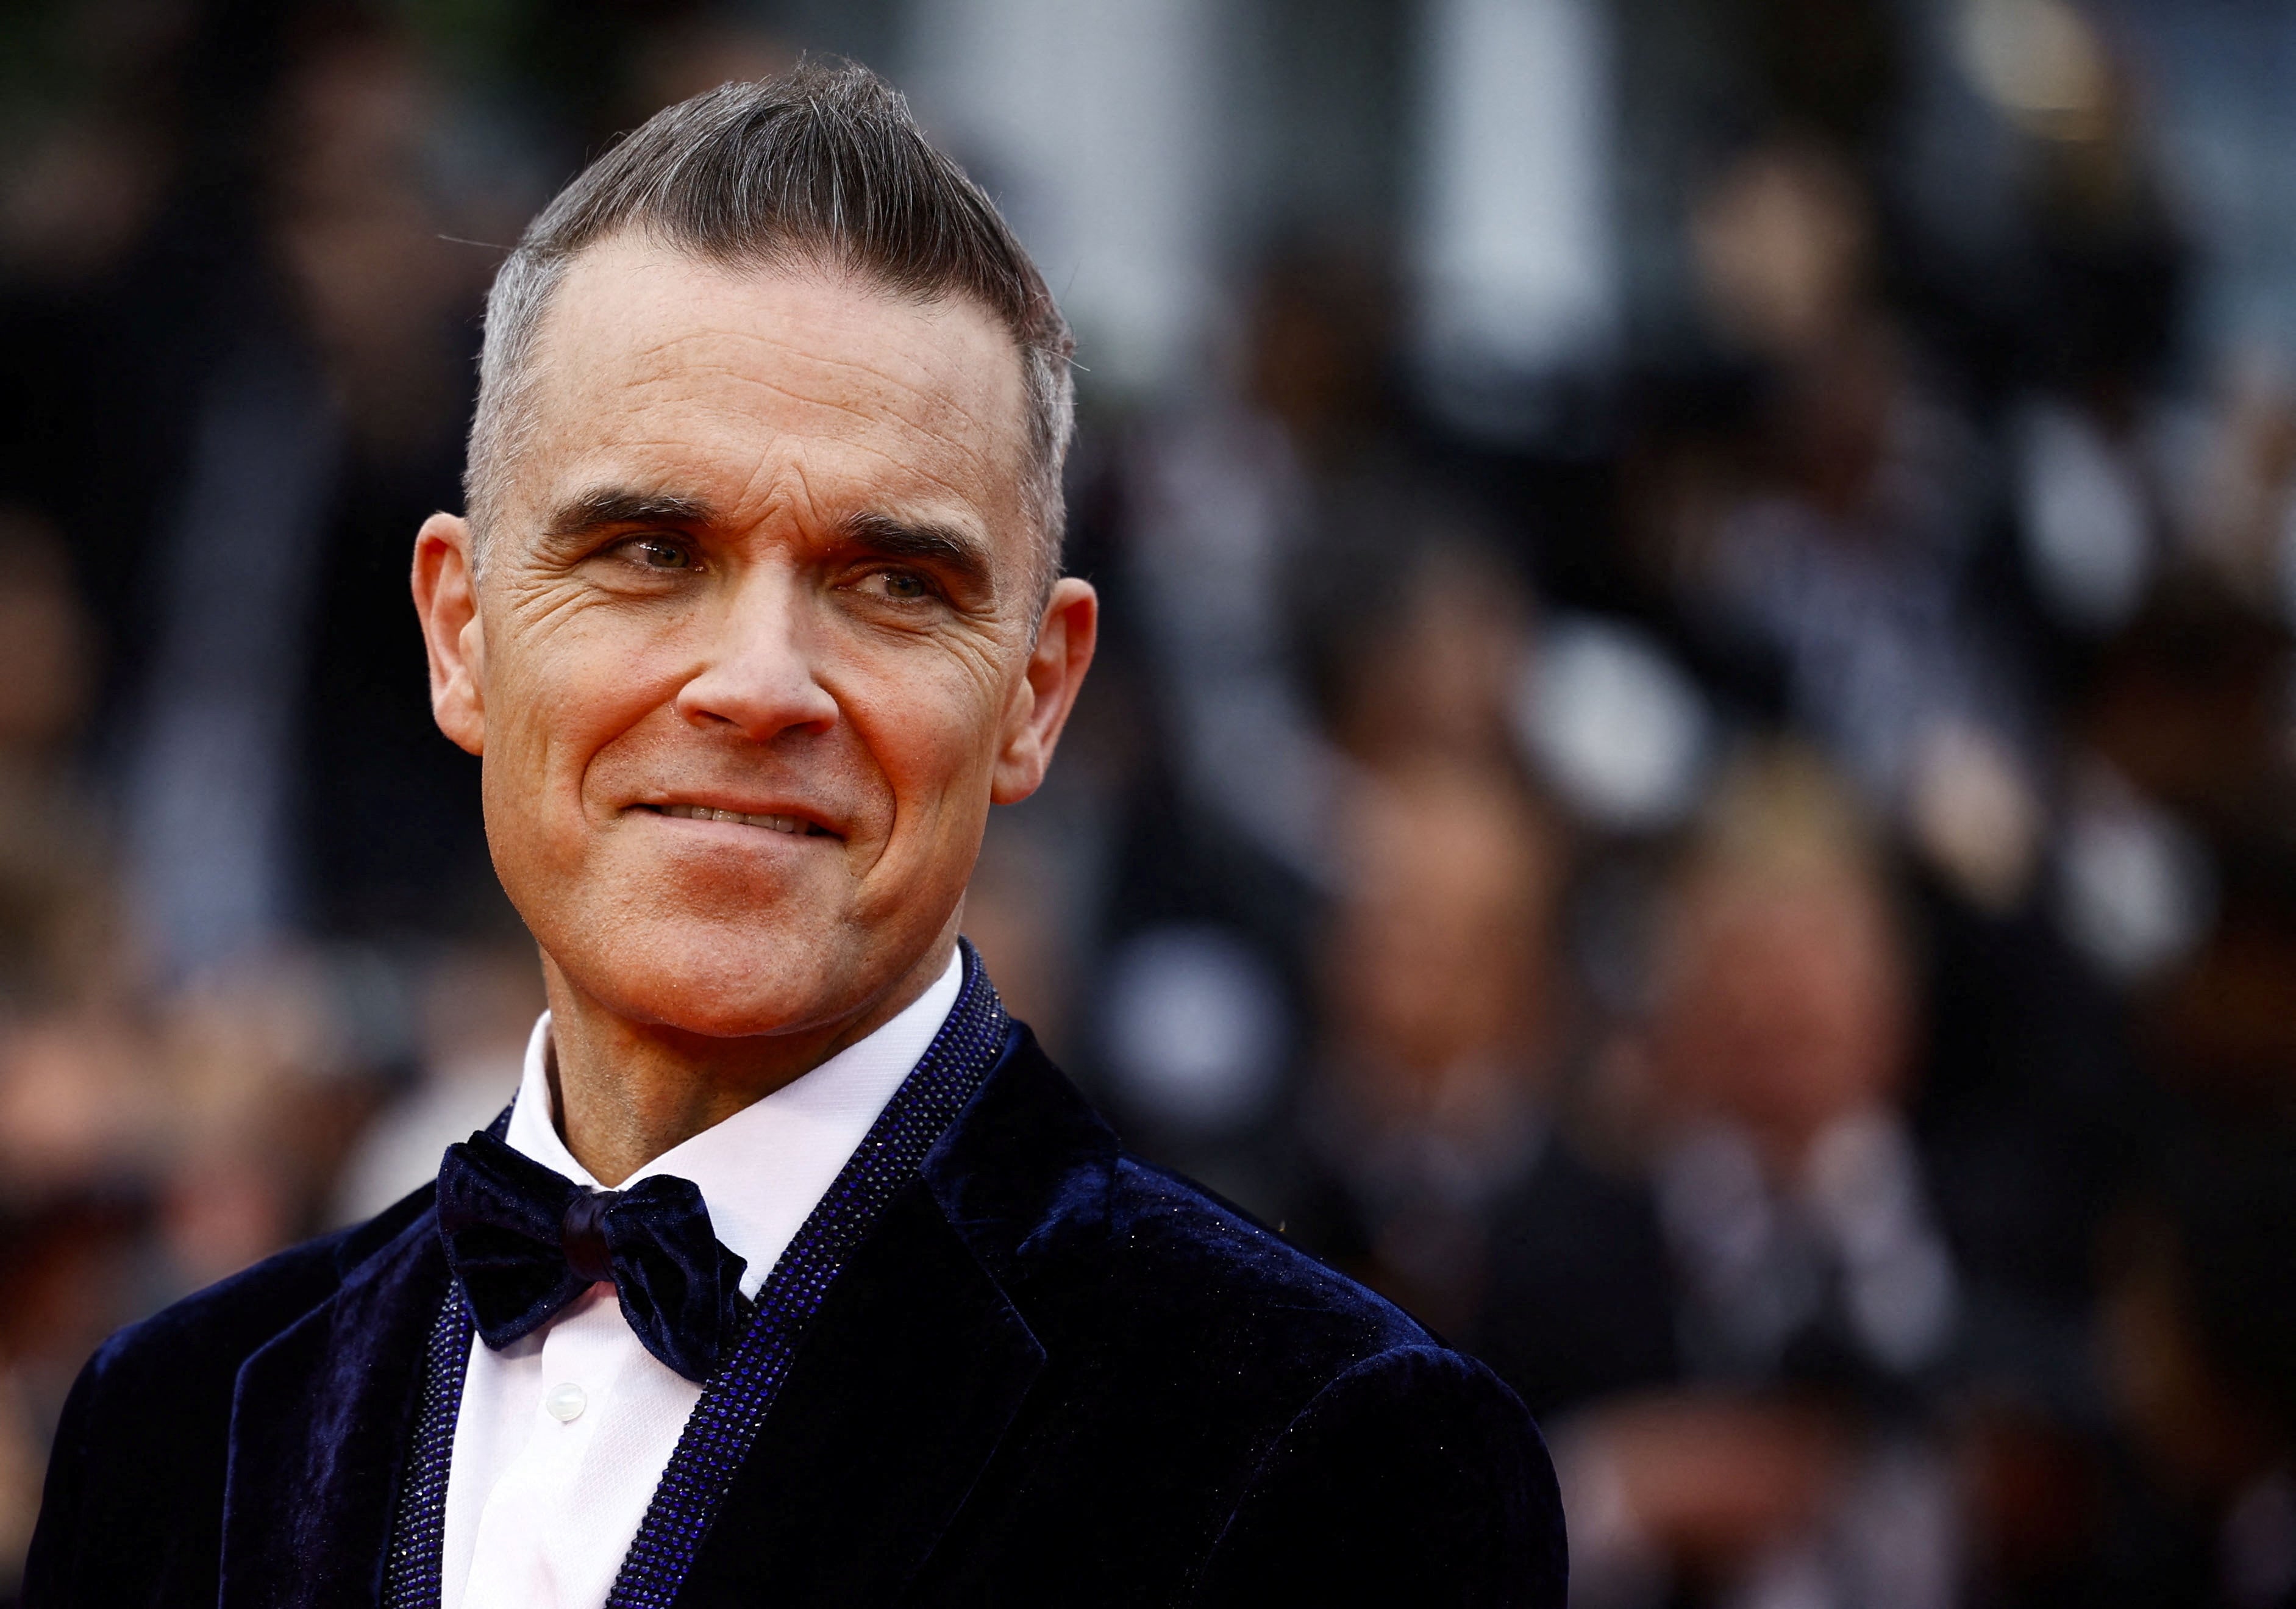 Robbie Williams will headline BST next year